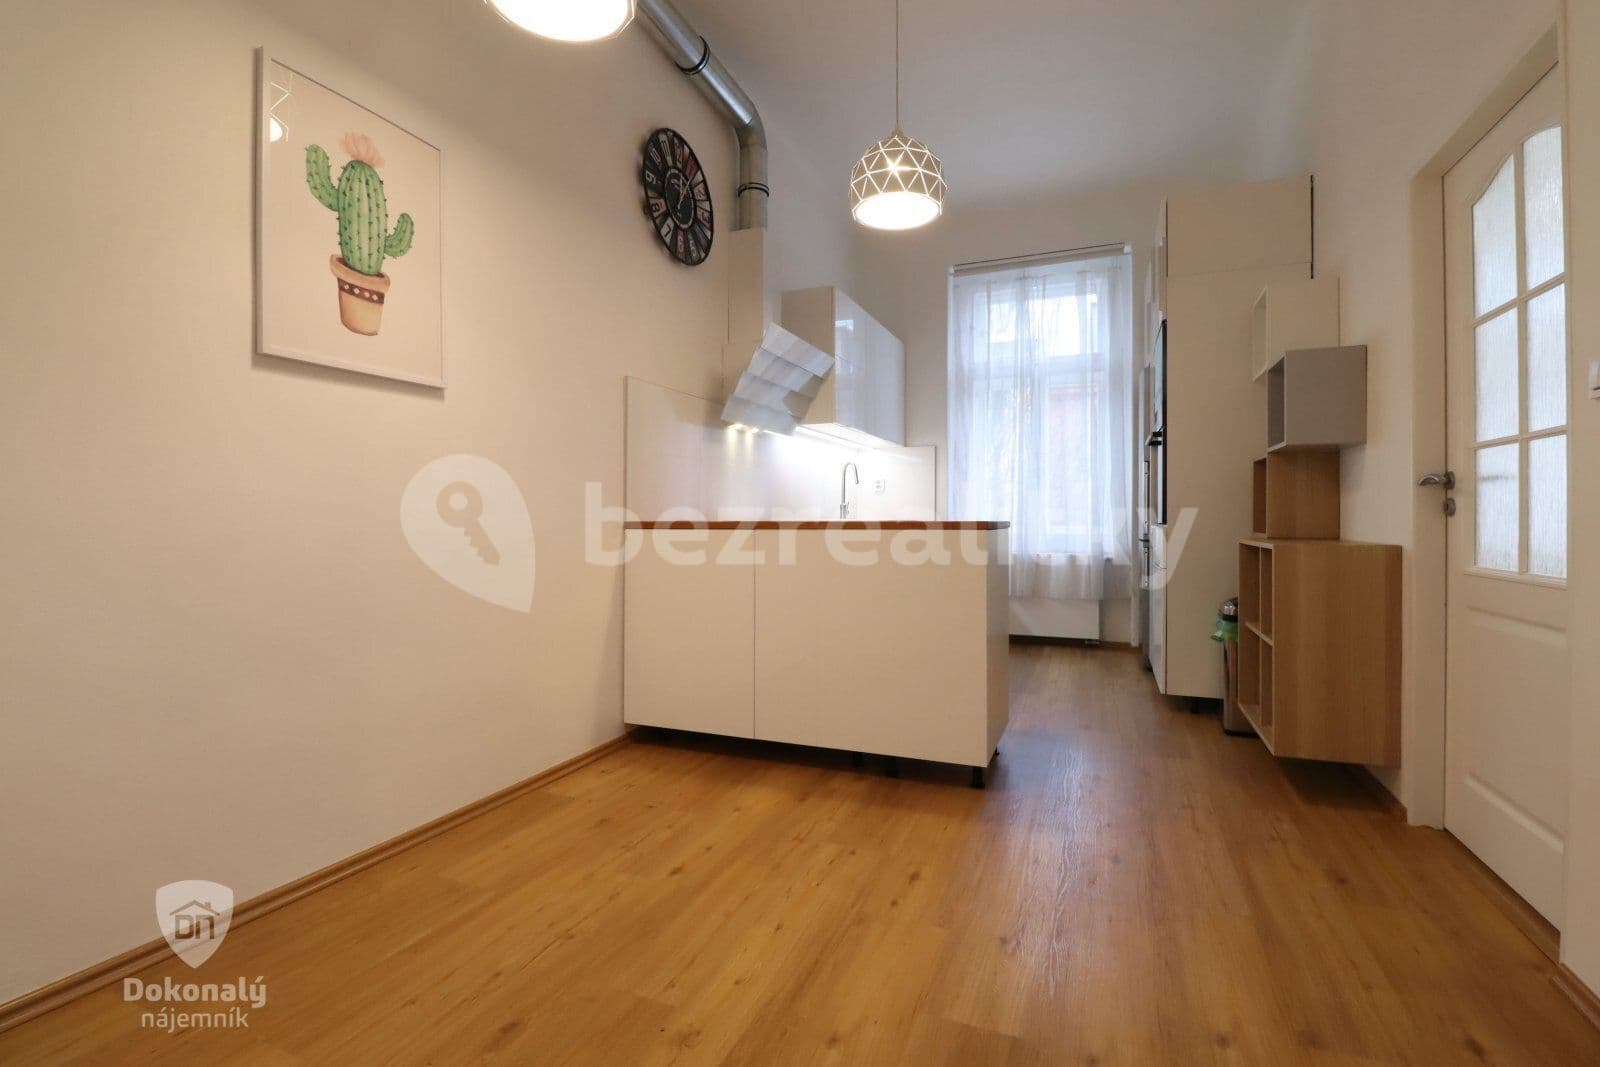 2 bedroom flat to rent, 66 m², Zoubkova, Prague, Prague